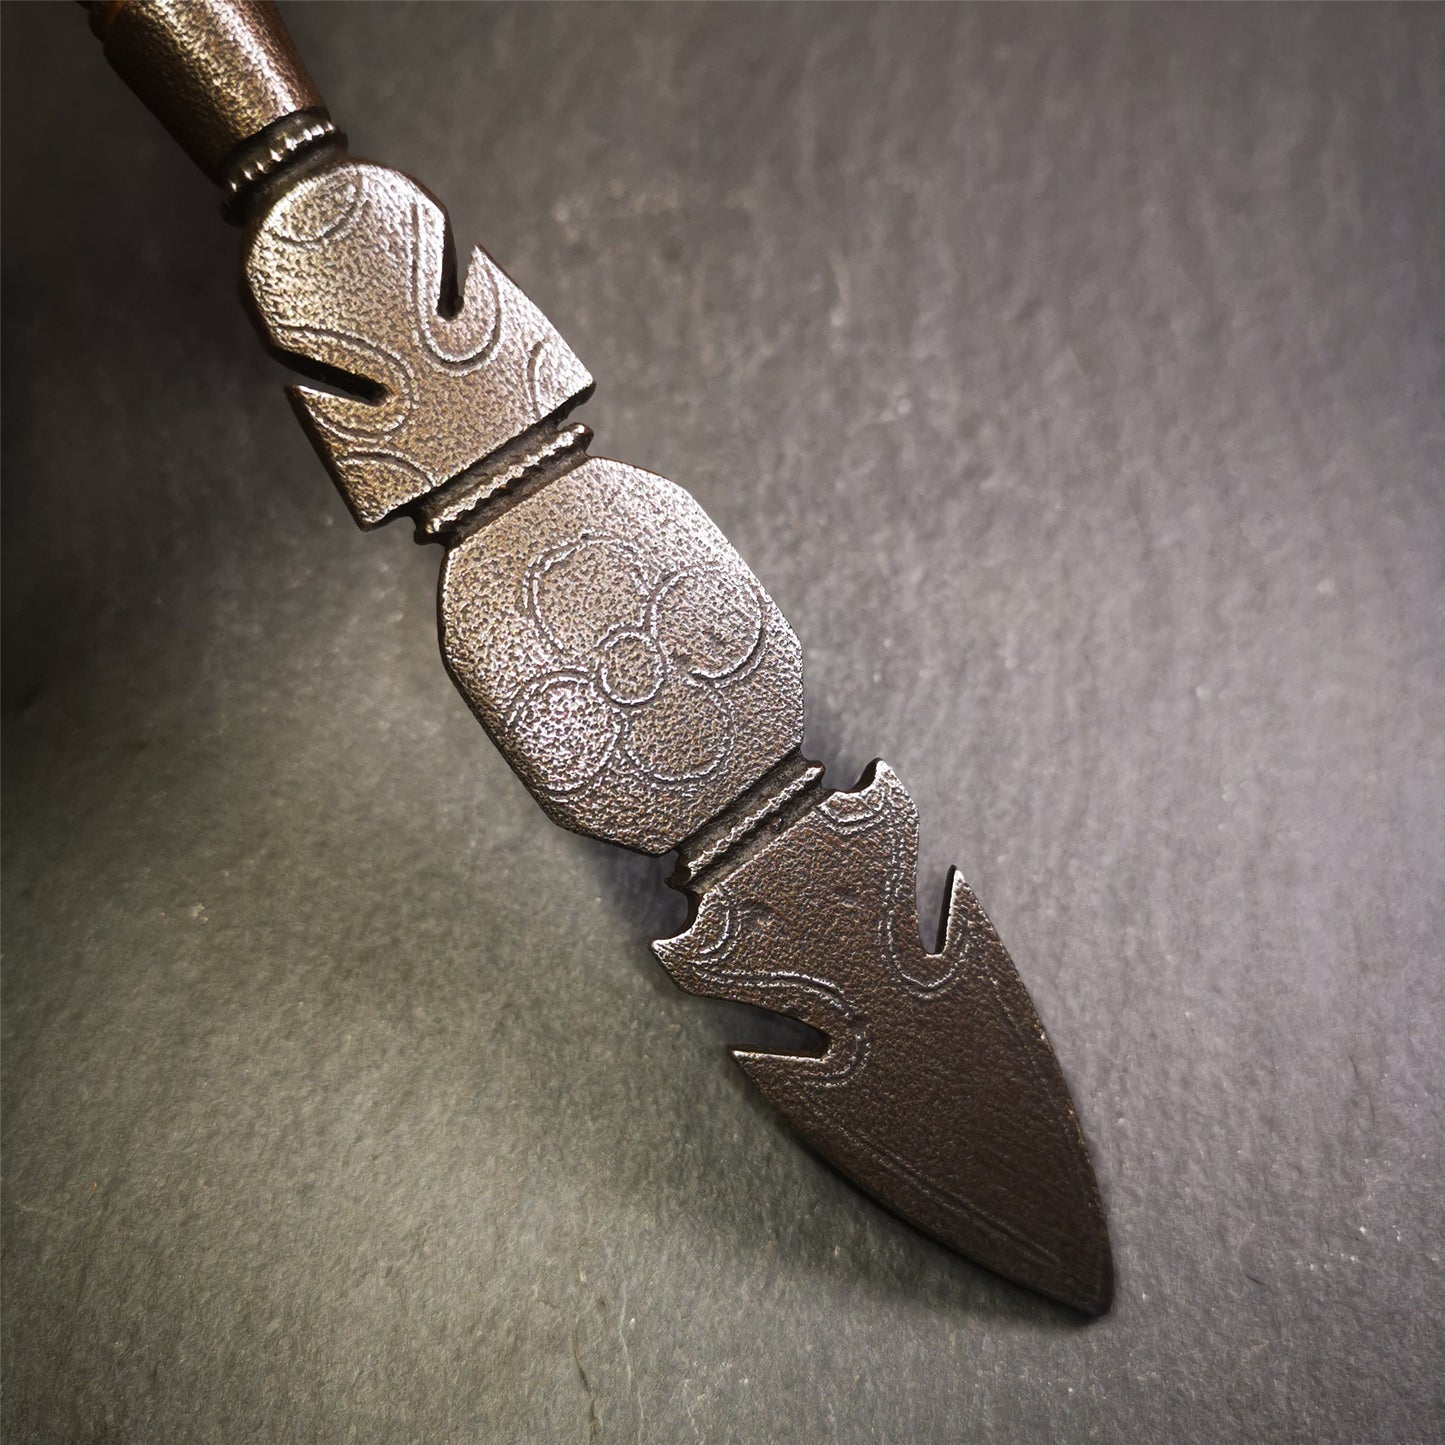 Manjusri Sword - 7.9"